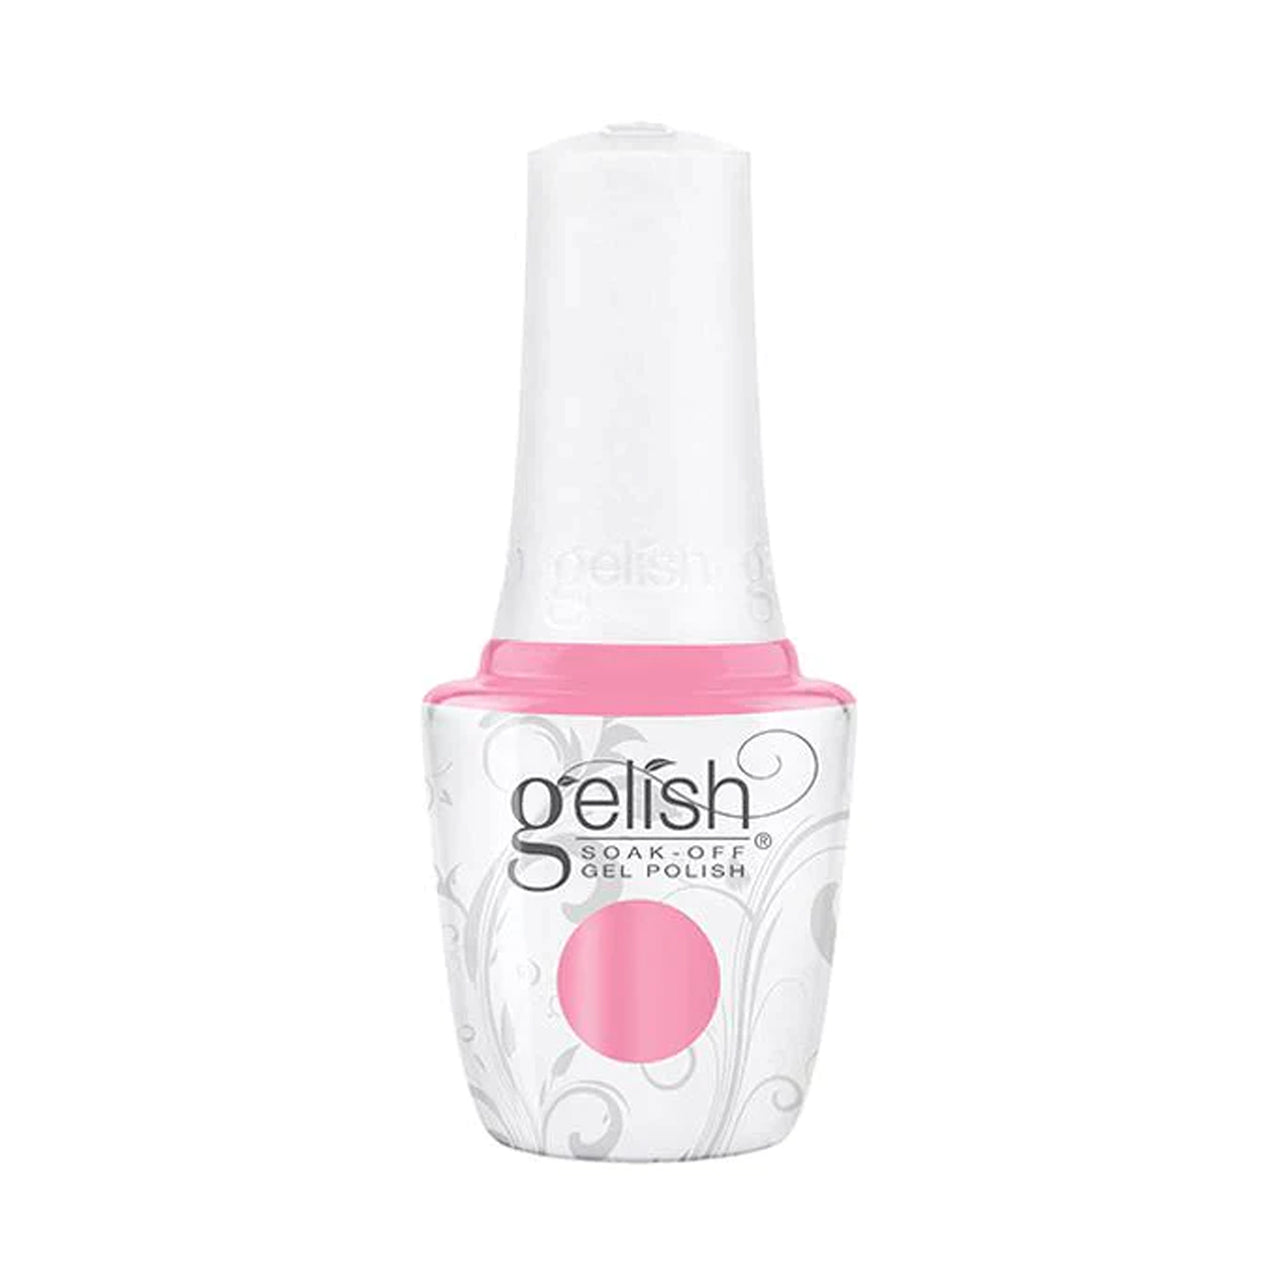 Gelish Nail Colours - Pink Gelish Nails - 486 Bed Of Petals - 1110486